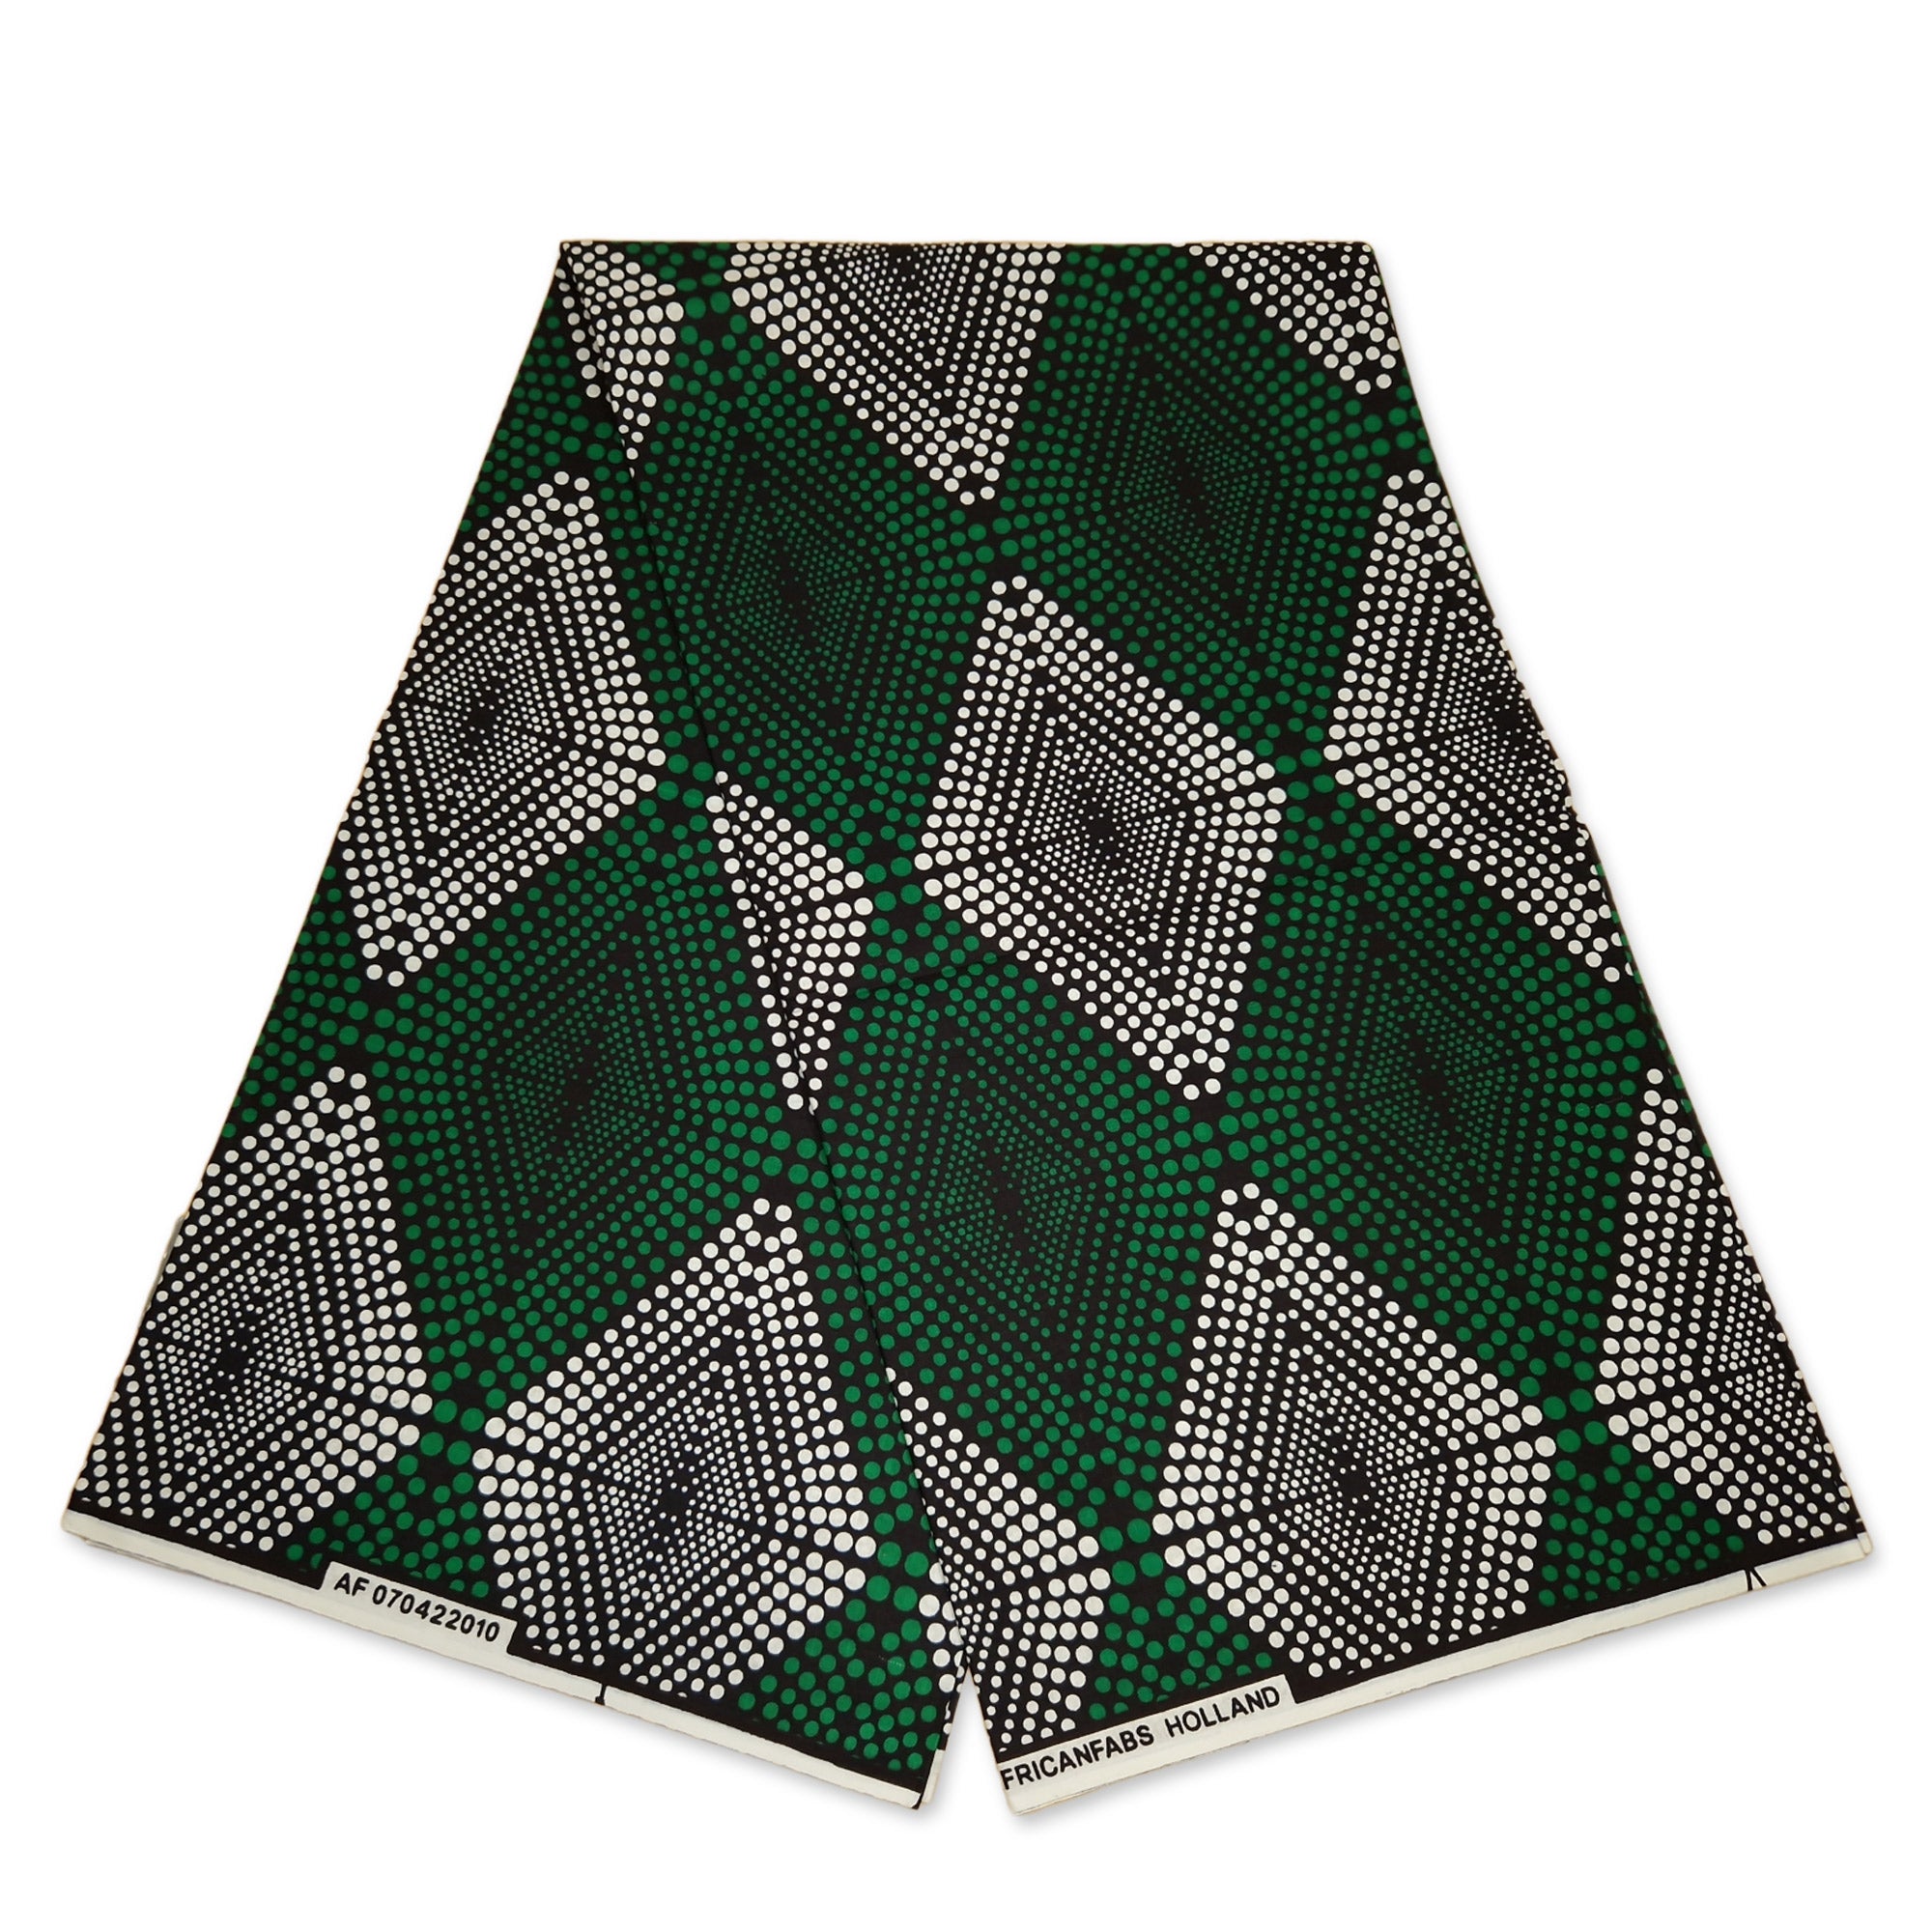 Afrikanischer Print Stoff - Grün diamonds - 100% Baumwolle